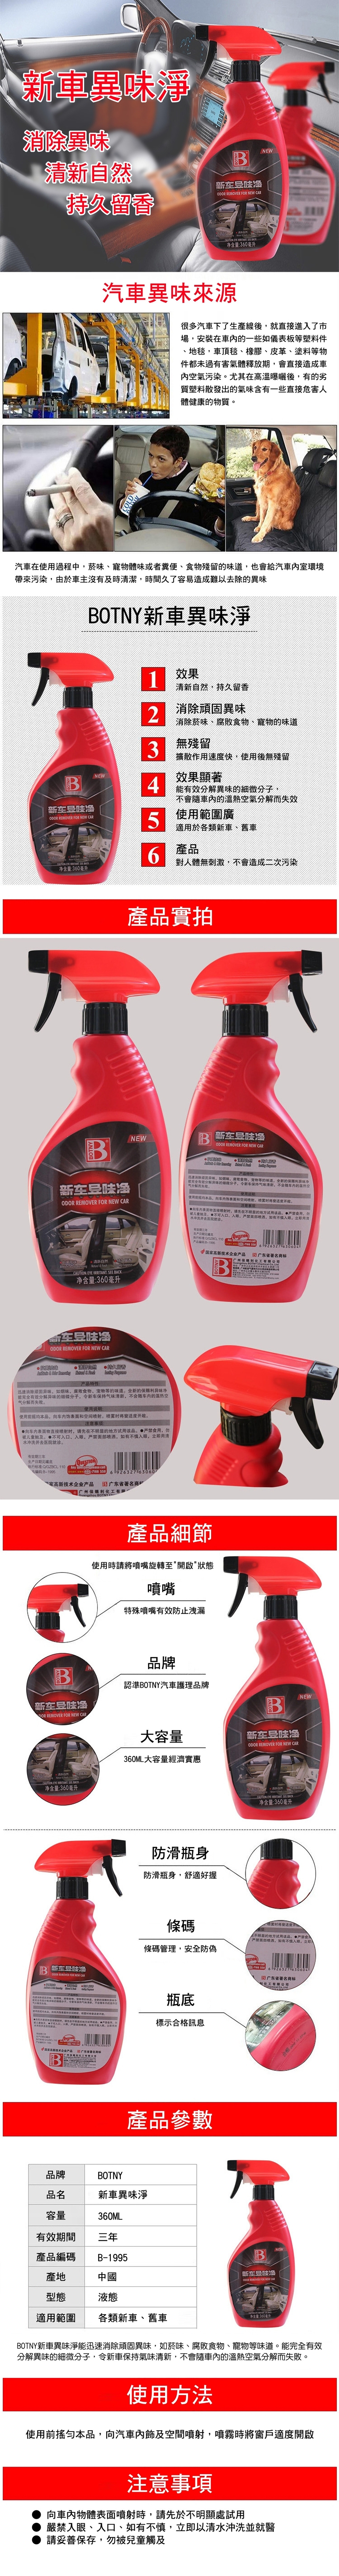 【BOTNY汽車/居家】異味清淨劑 360ML 洗車場 冷氣 空調 芳香 除臭 消臭 異味